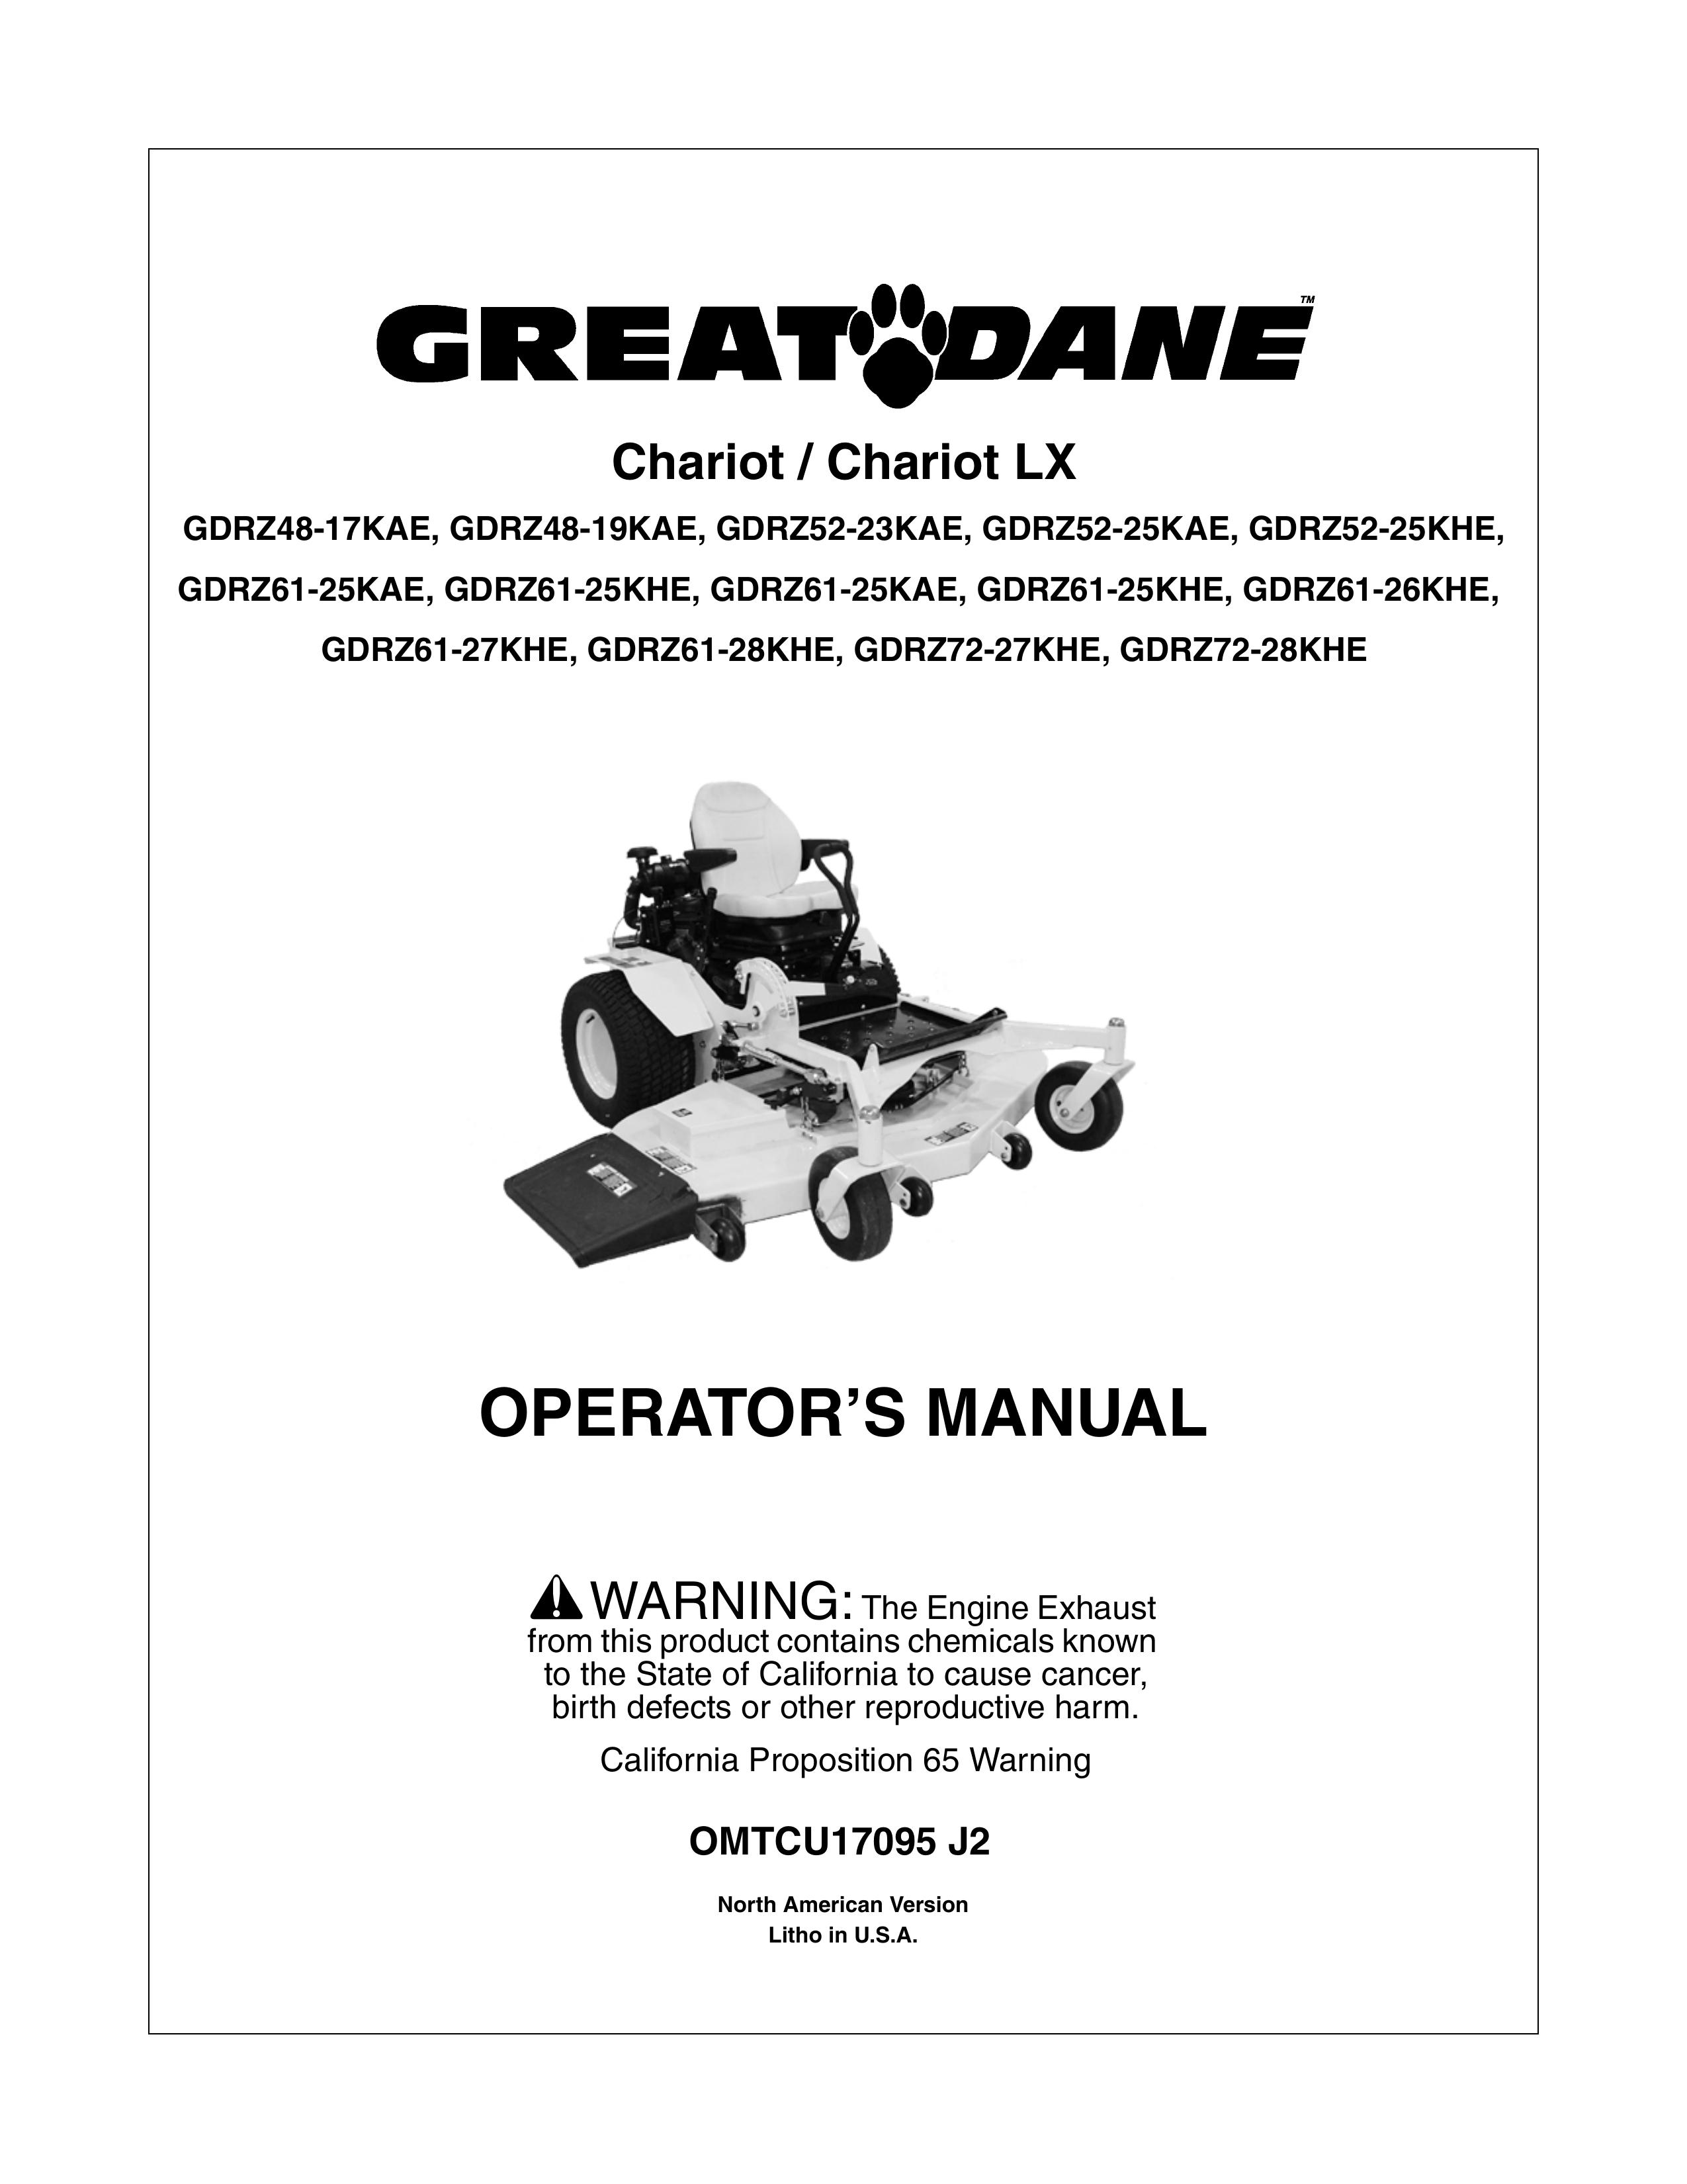 Great Dane GDRZ48-17KAE Lawn Mower User Manual